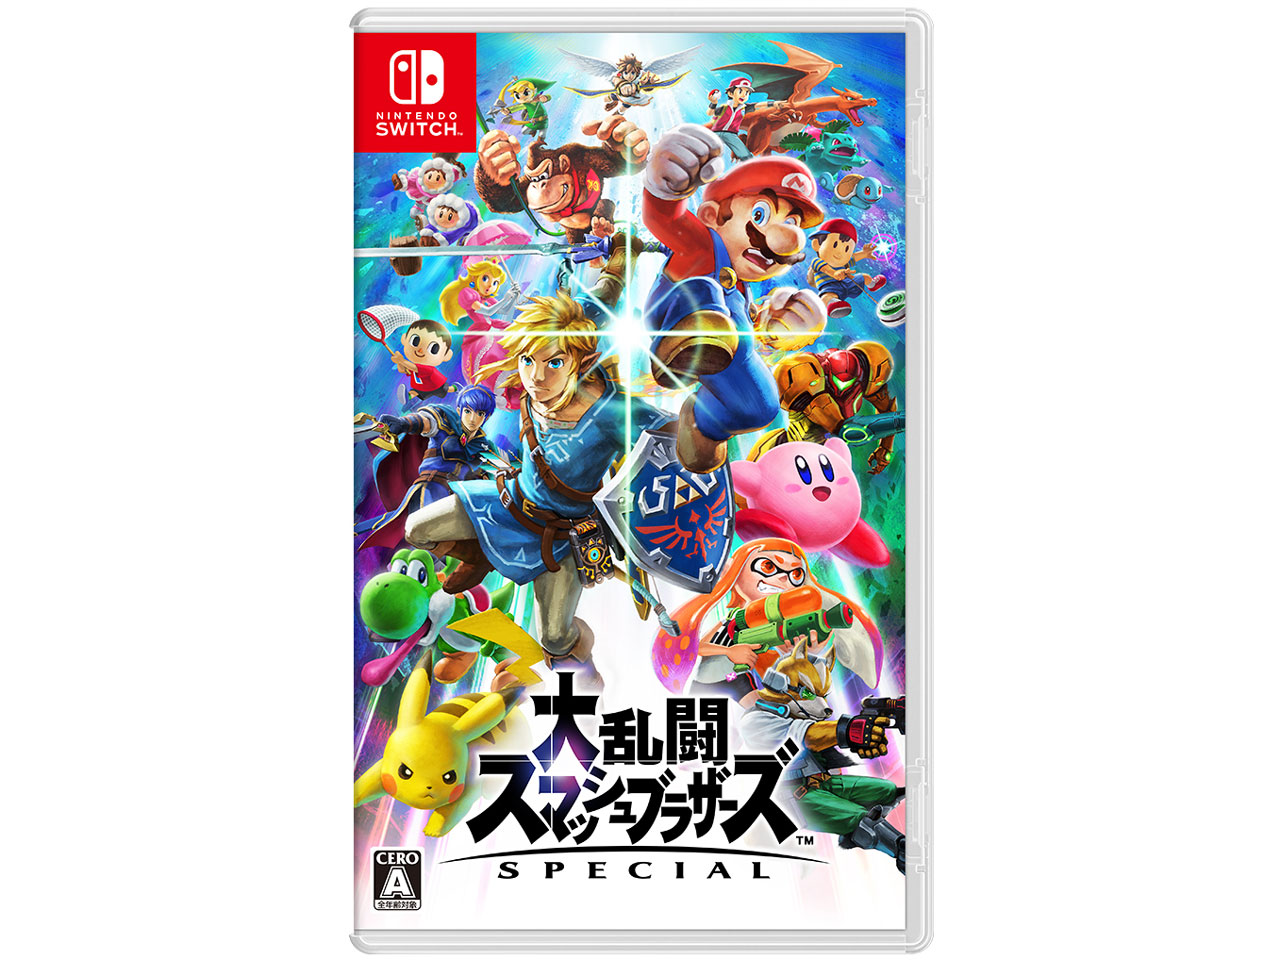 価格.com - 大乱闘スマッシュブラザーズ SPECIAL [Nintendo Switch] の製品画像